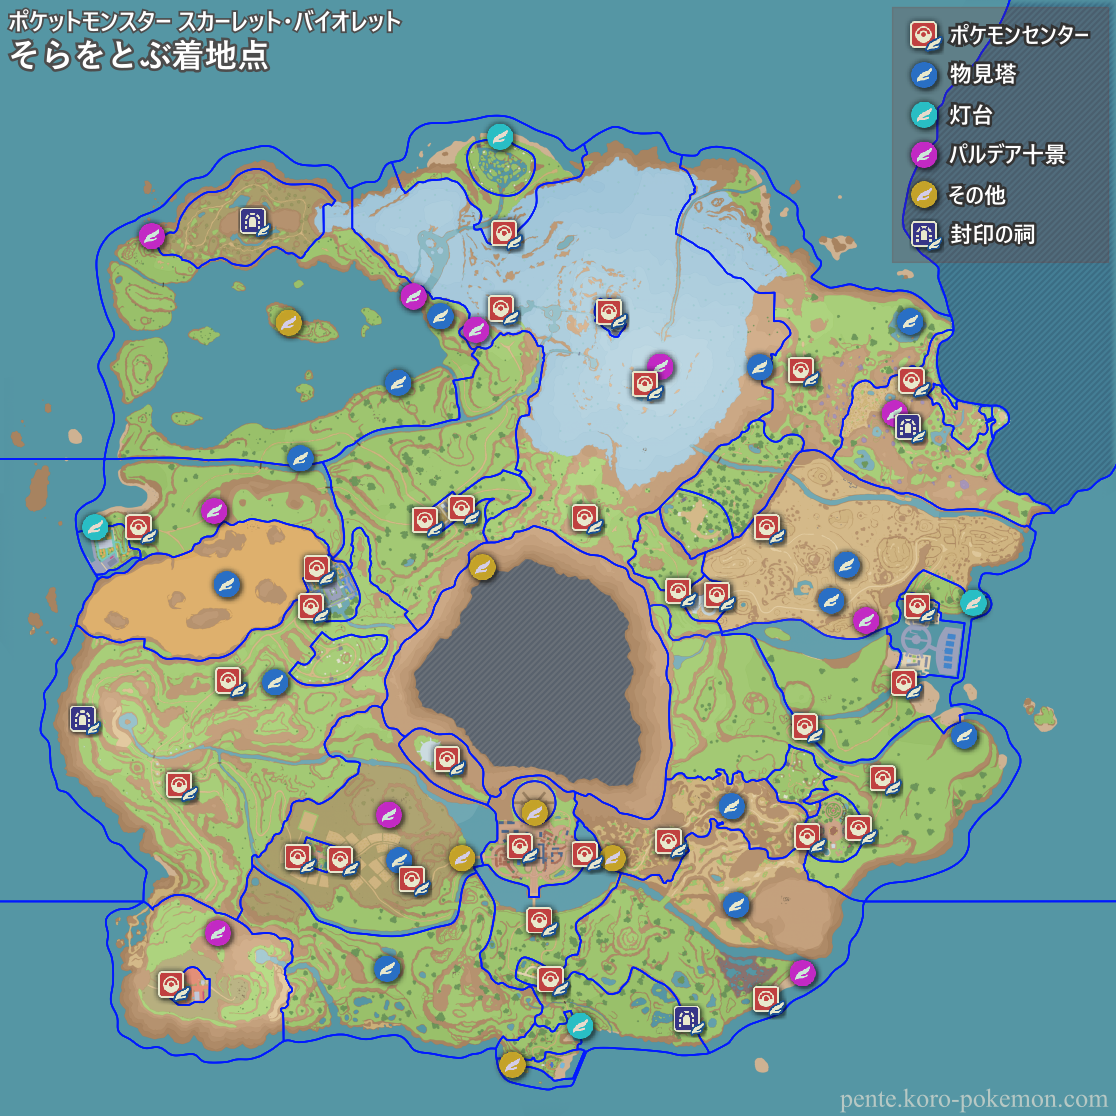 パルデア地方のマップのジグソーパズル